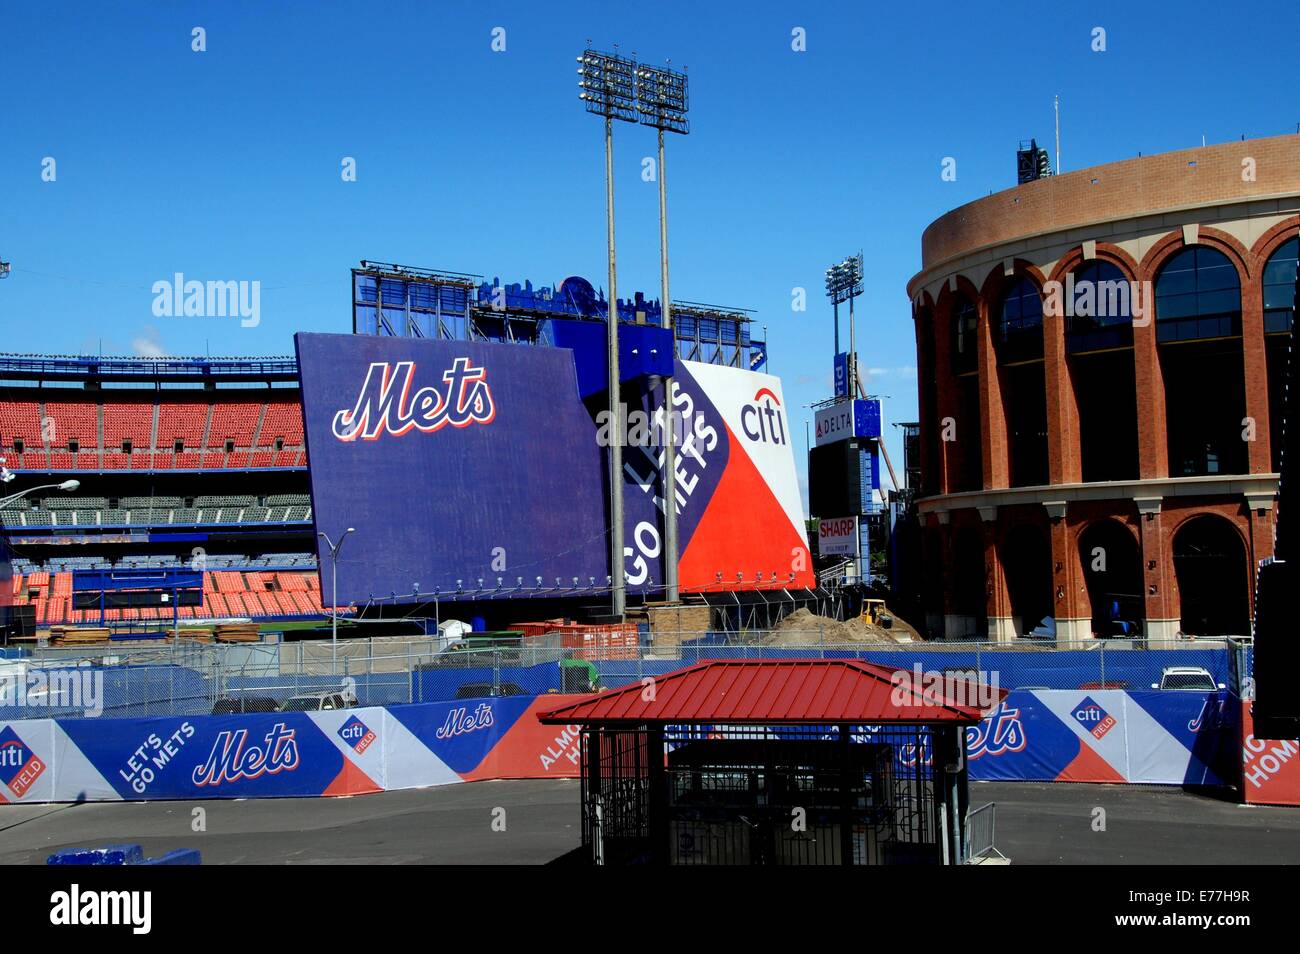 QUEENS, NEW YORK: due stadi di karité, casa dei New York Mets squadra di baseball - il vecchio sulla sinistra e nuovi Citifield Stadium Foto Stock